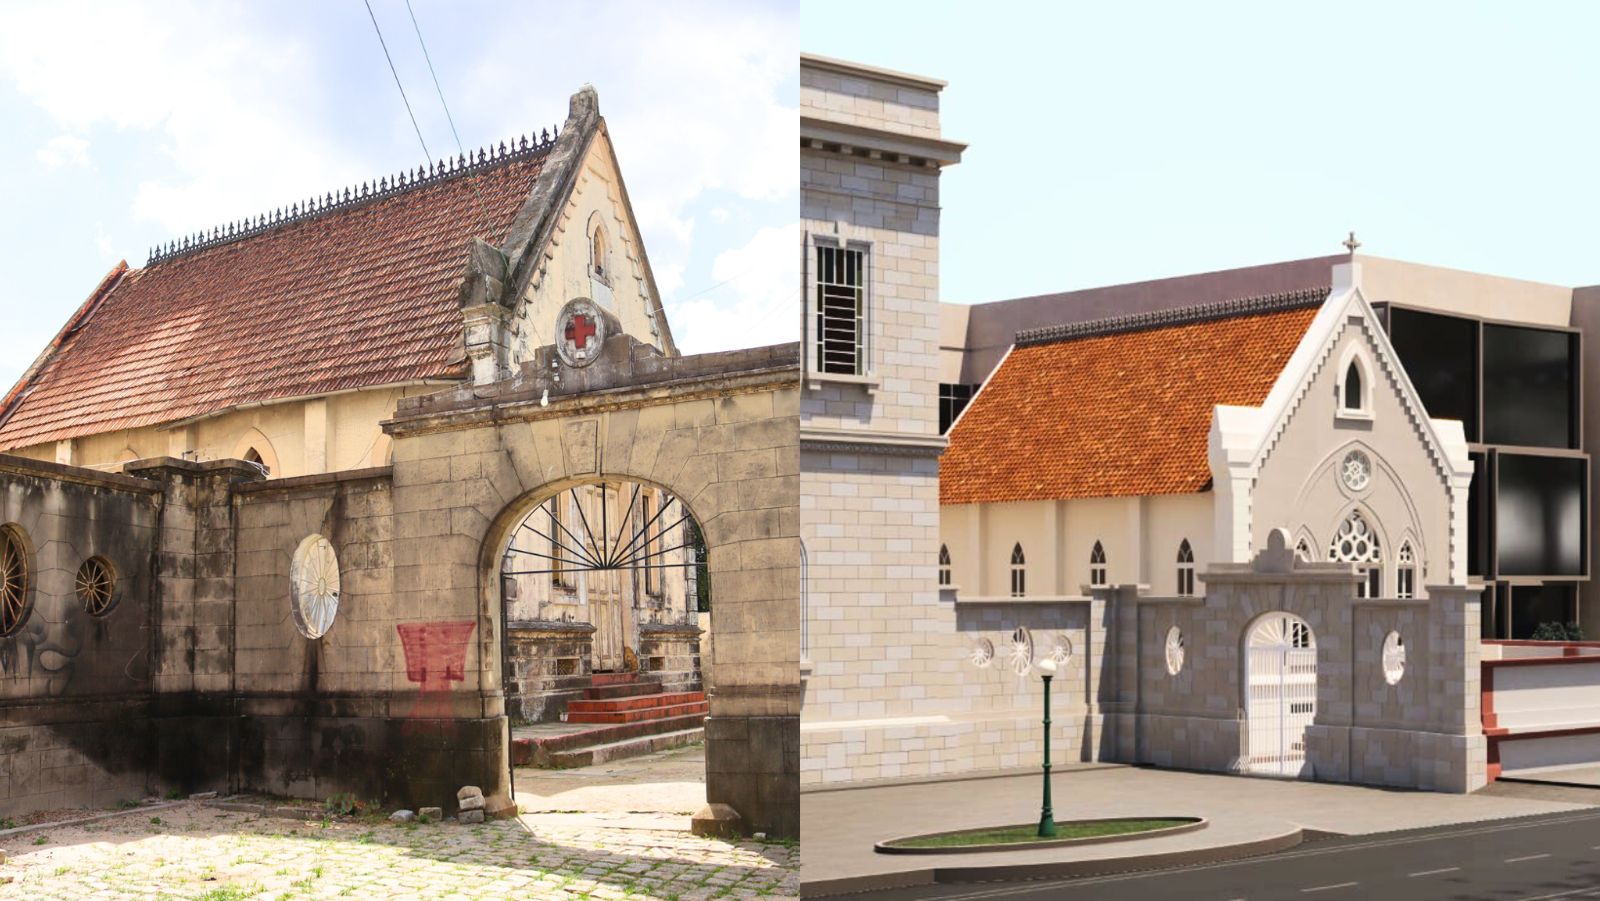 ‘The rebirth’, Maria do Carmo reveals details of the restoration of the Santa Casa de Misericórdia